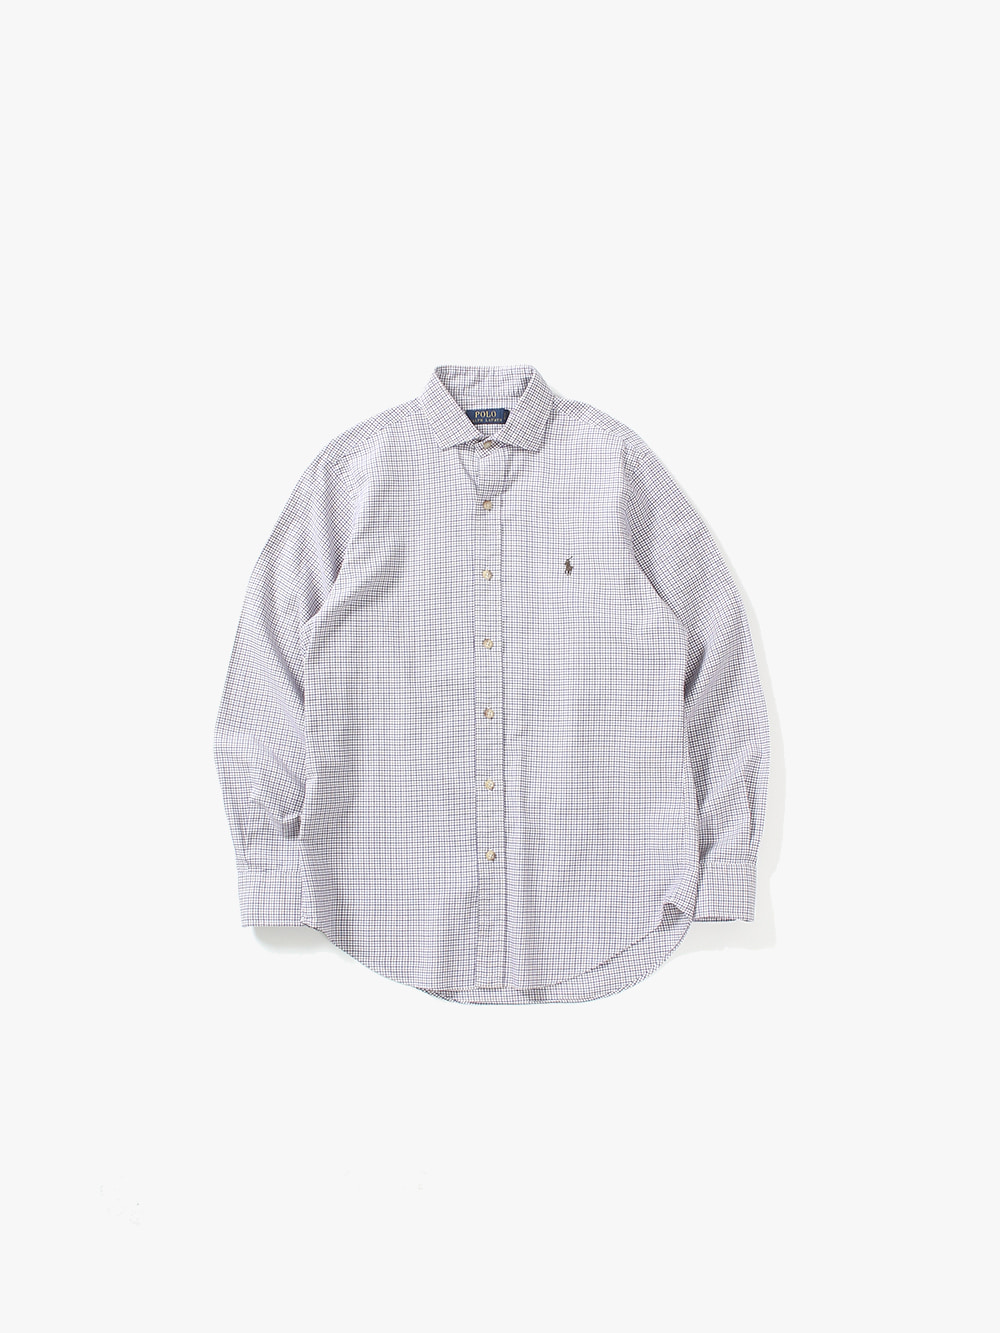 [ S ] Polo Ralph Lauren Shirt (6301)